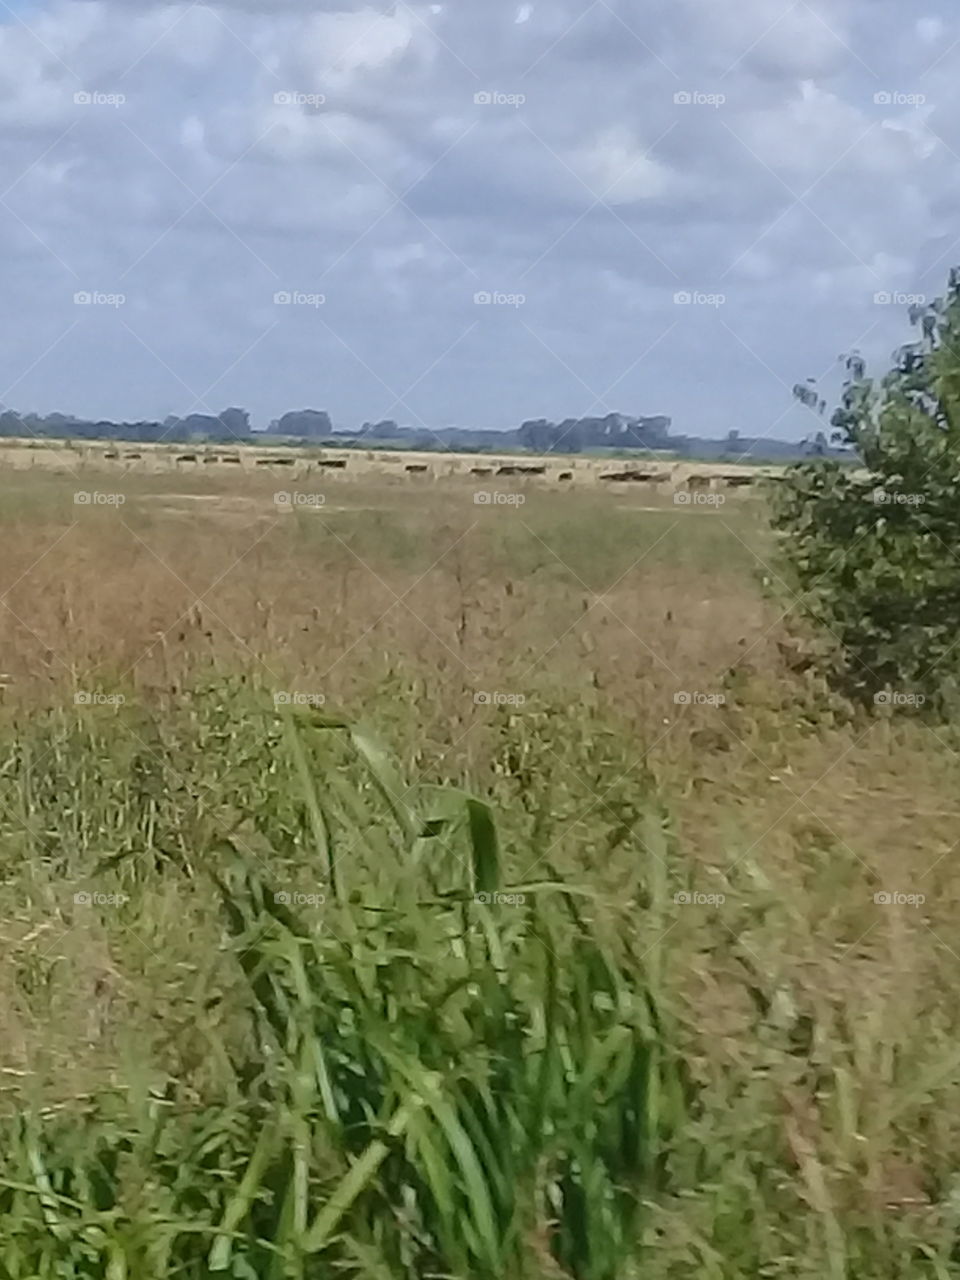 campo abierto con ganado bovino pastoreando a lo lejos. Foto tomada desde un ómnibus en movimiento.